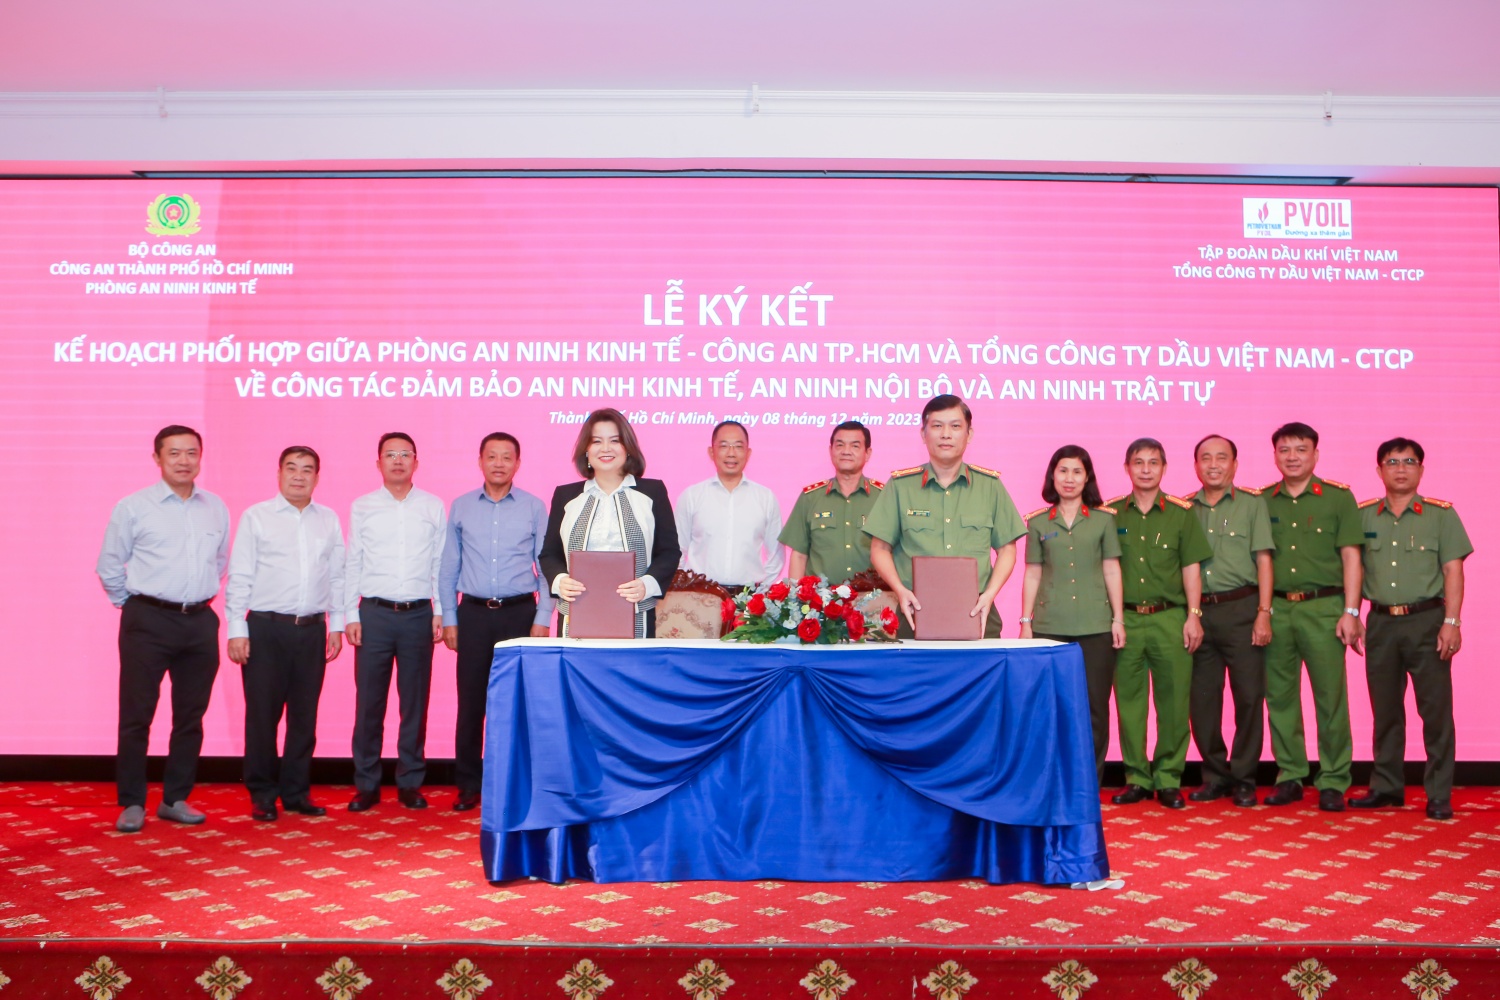 Bà Lê Thị Thu Hương - Phó Tổng Giám đốc PVOIL (bên trái) và Đại tá Nguyễn Phước Thường - Trưởng phòng An ninh kinh tế (bên phải) đại diện hai đơn vị ký kết Kế hoạch phối hợp